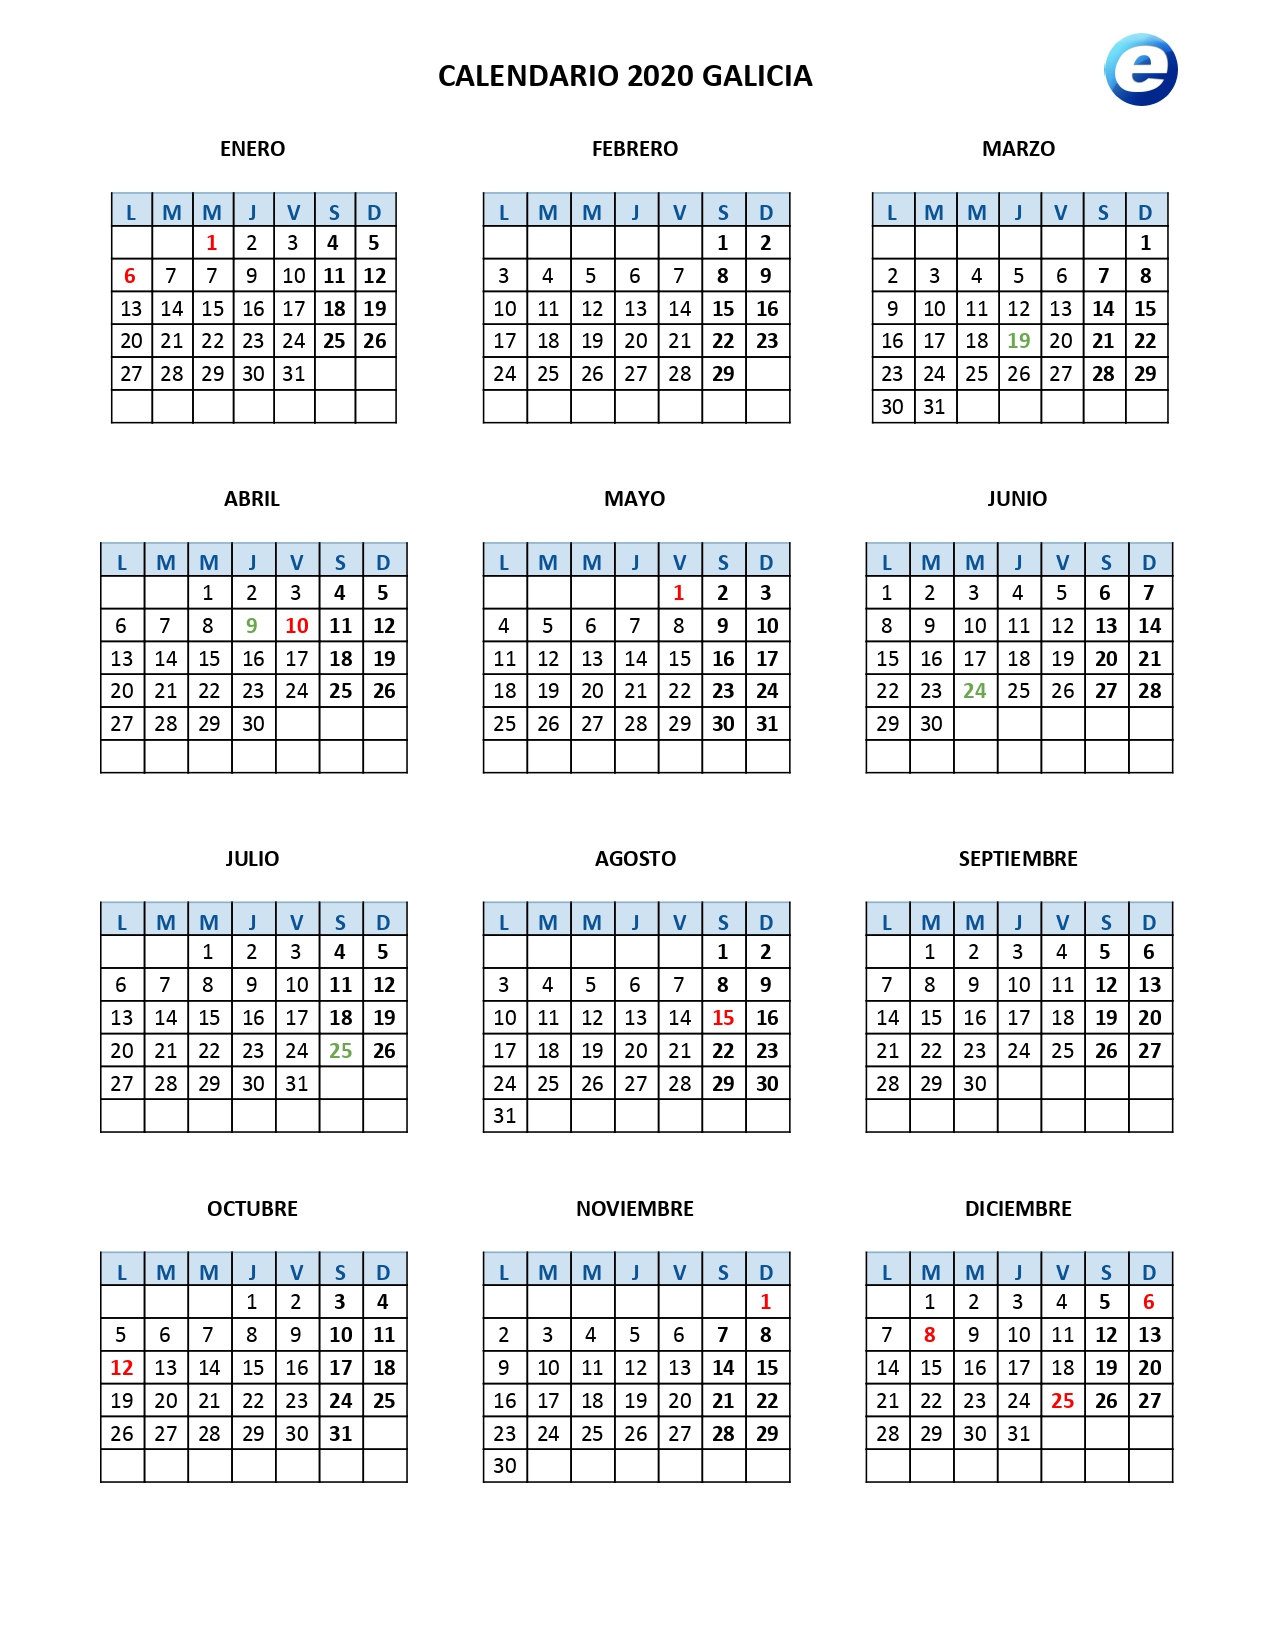 Calendario laboral 2020, calendarios para imprimir con los festivos oficiales por comunidad 2